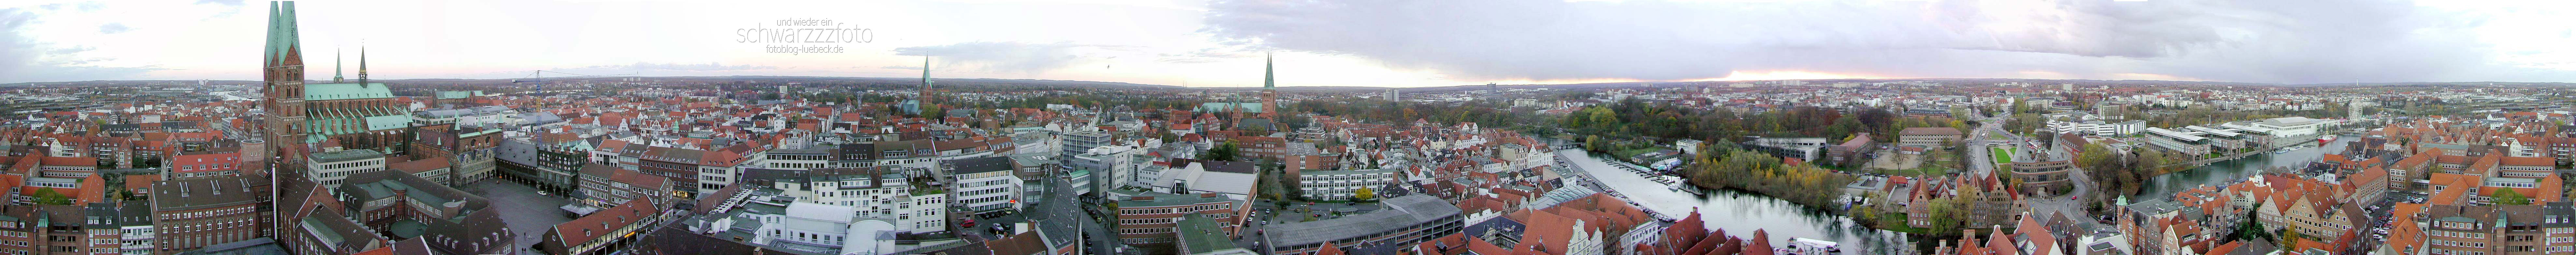 Panorama vom Petriturm 1999